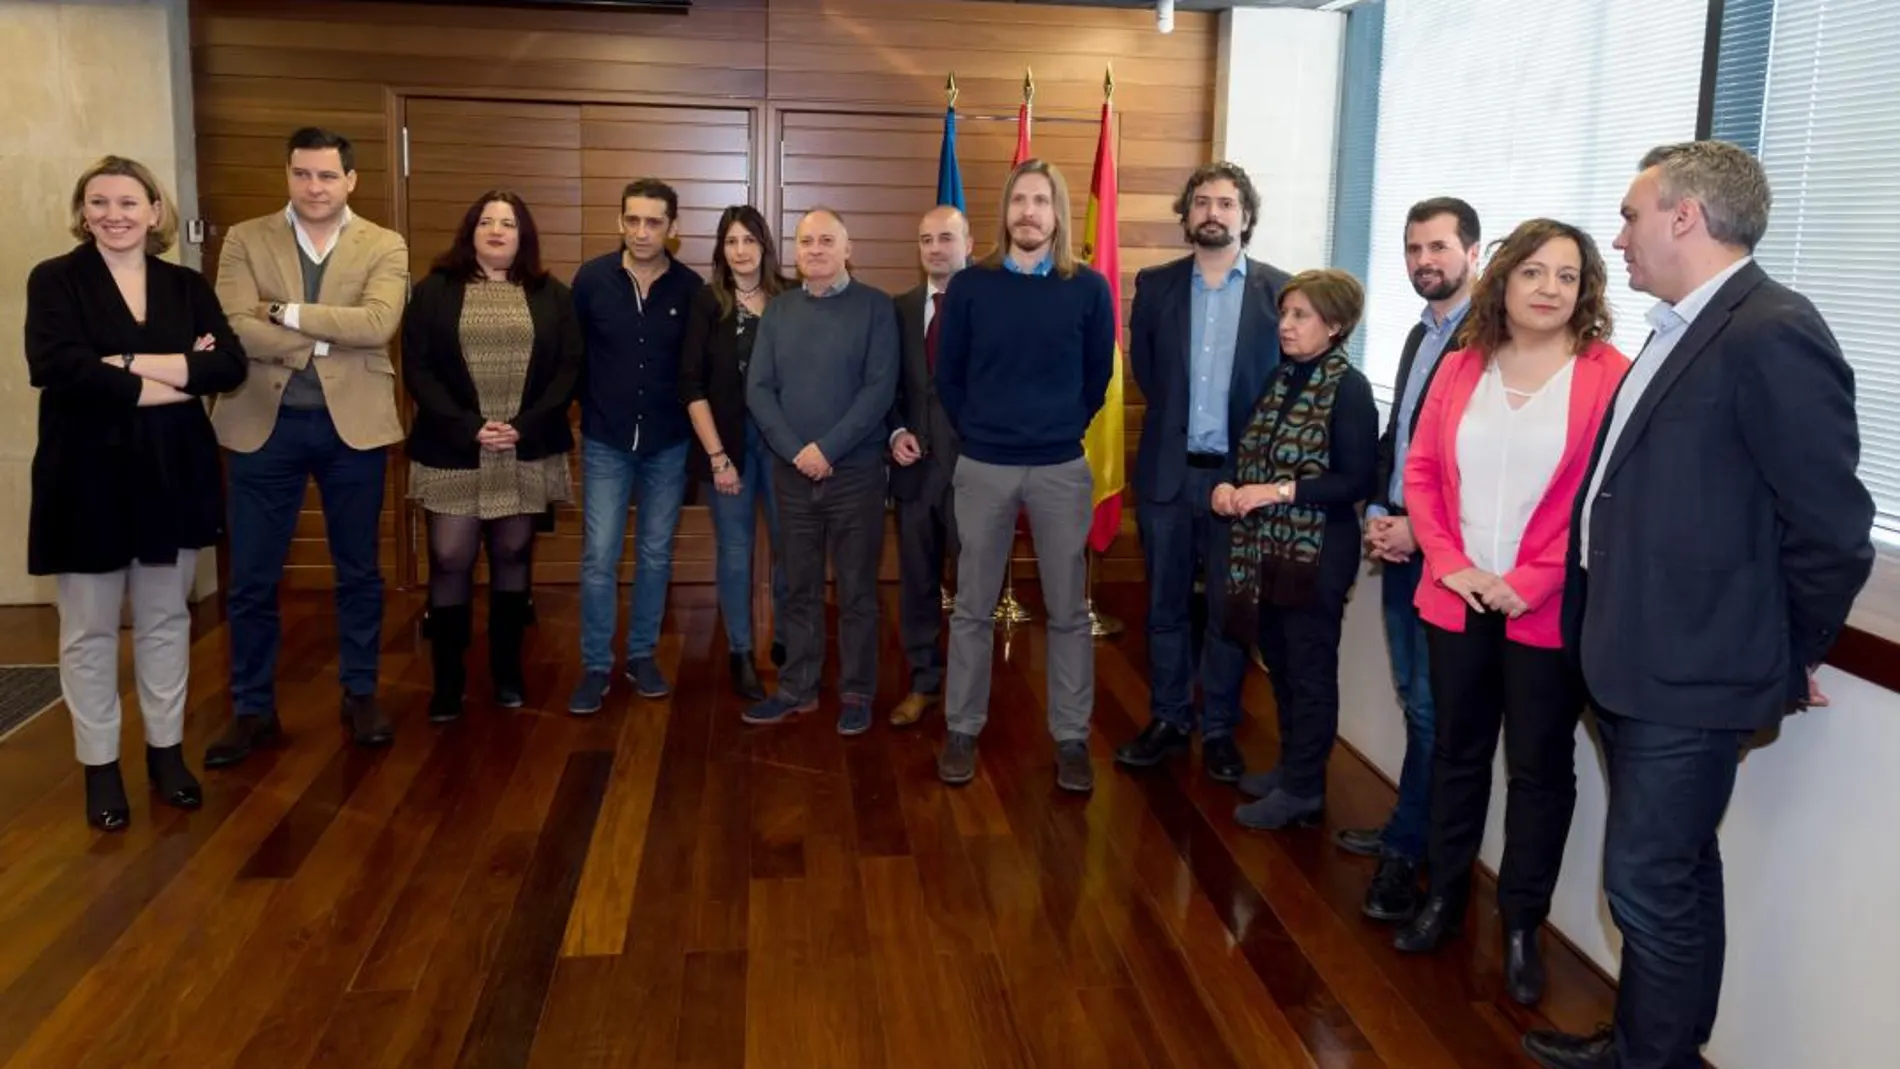 Los secretarios de CCOO y UGT, junto con los portavoces de todos los grupos políticos de las Cortes de Castilla y León, presentan el manifiesto conjunto suscrito con motivo de la celebración del Día Europeo por la Igualdad Salarial